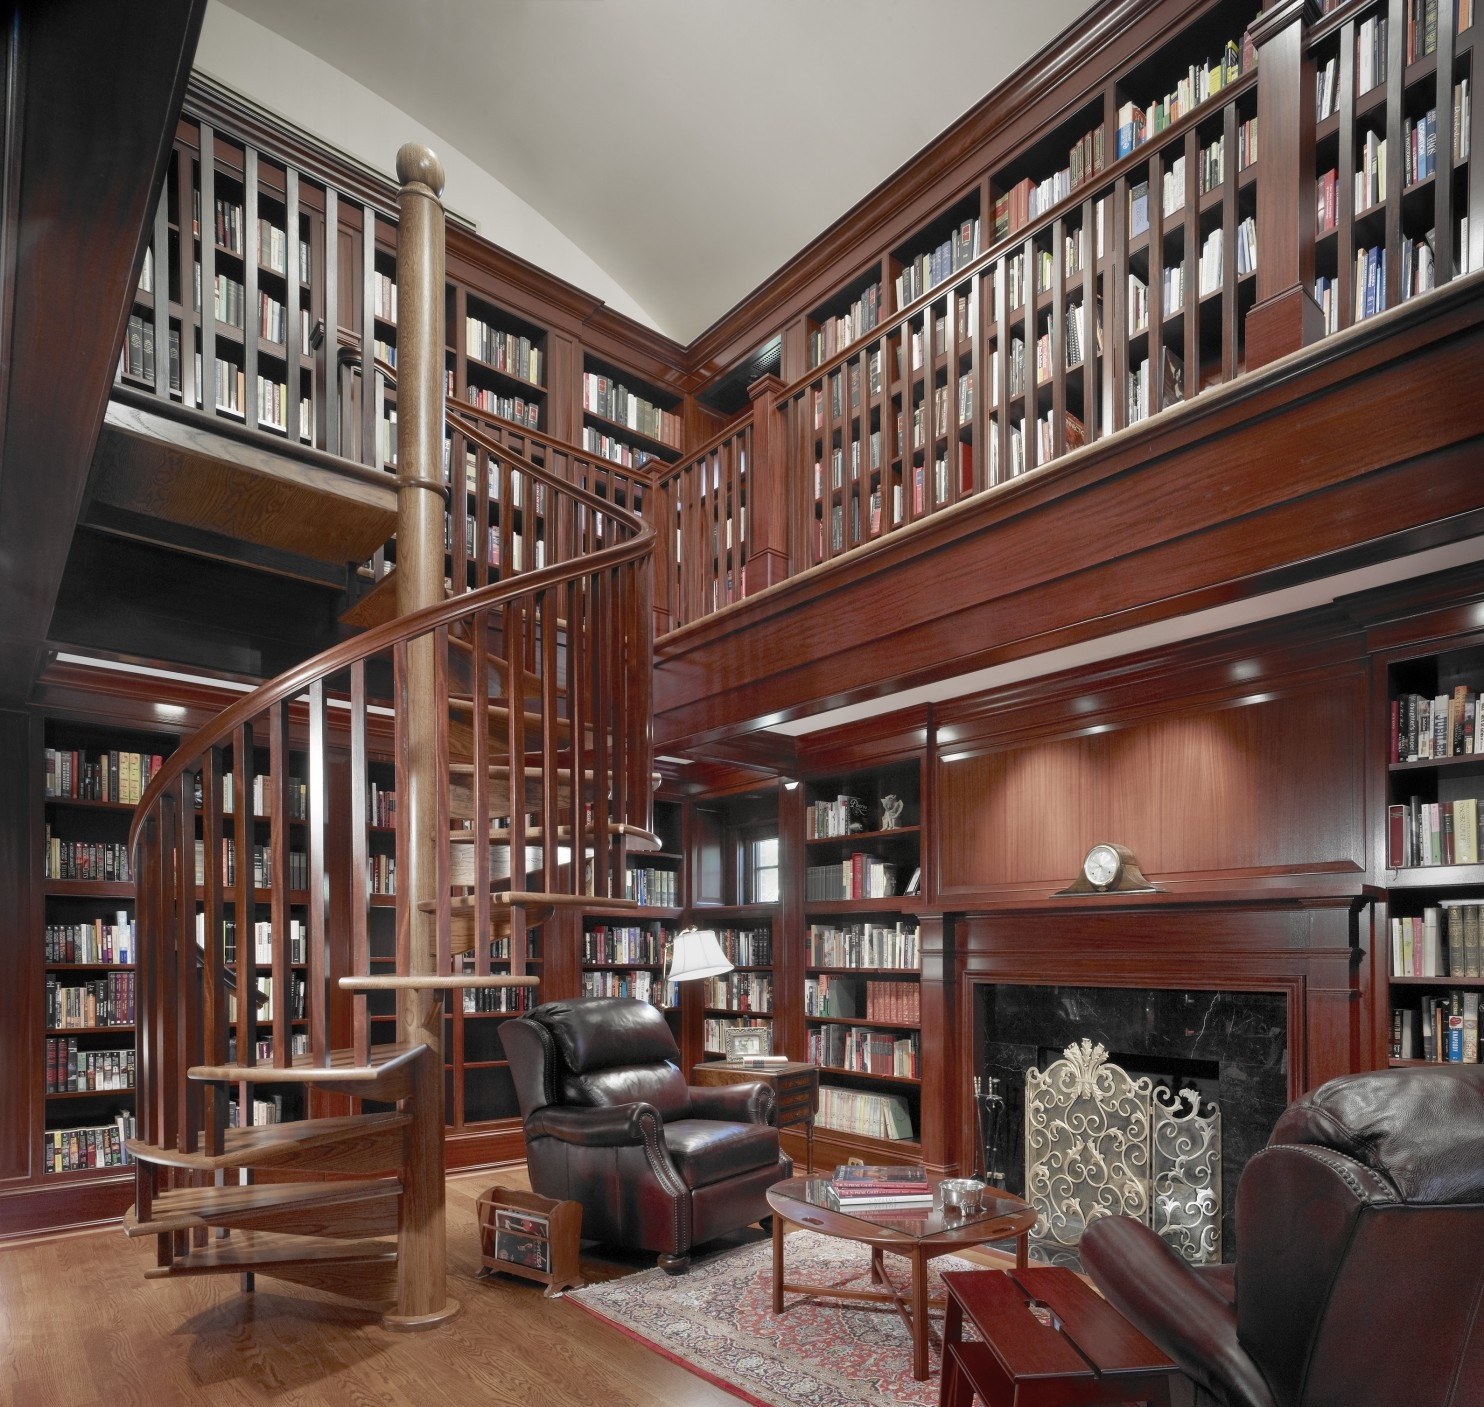 Extension library. Библиотека в доме. Интерьер библиотеки. Библиотека с высокими потолками. Домашняя библиотека интерьер.